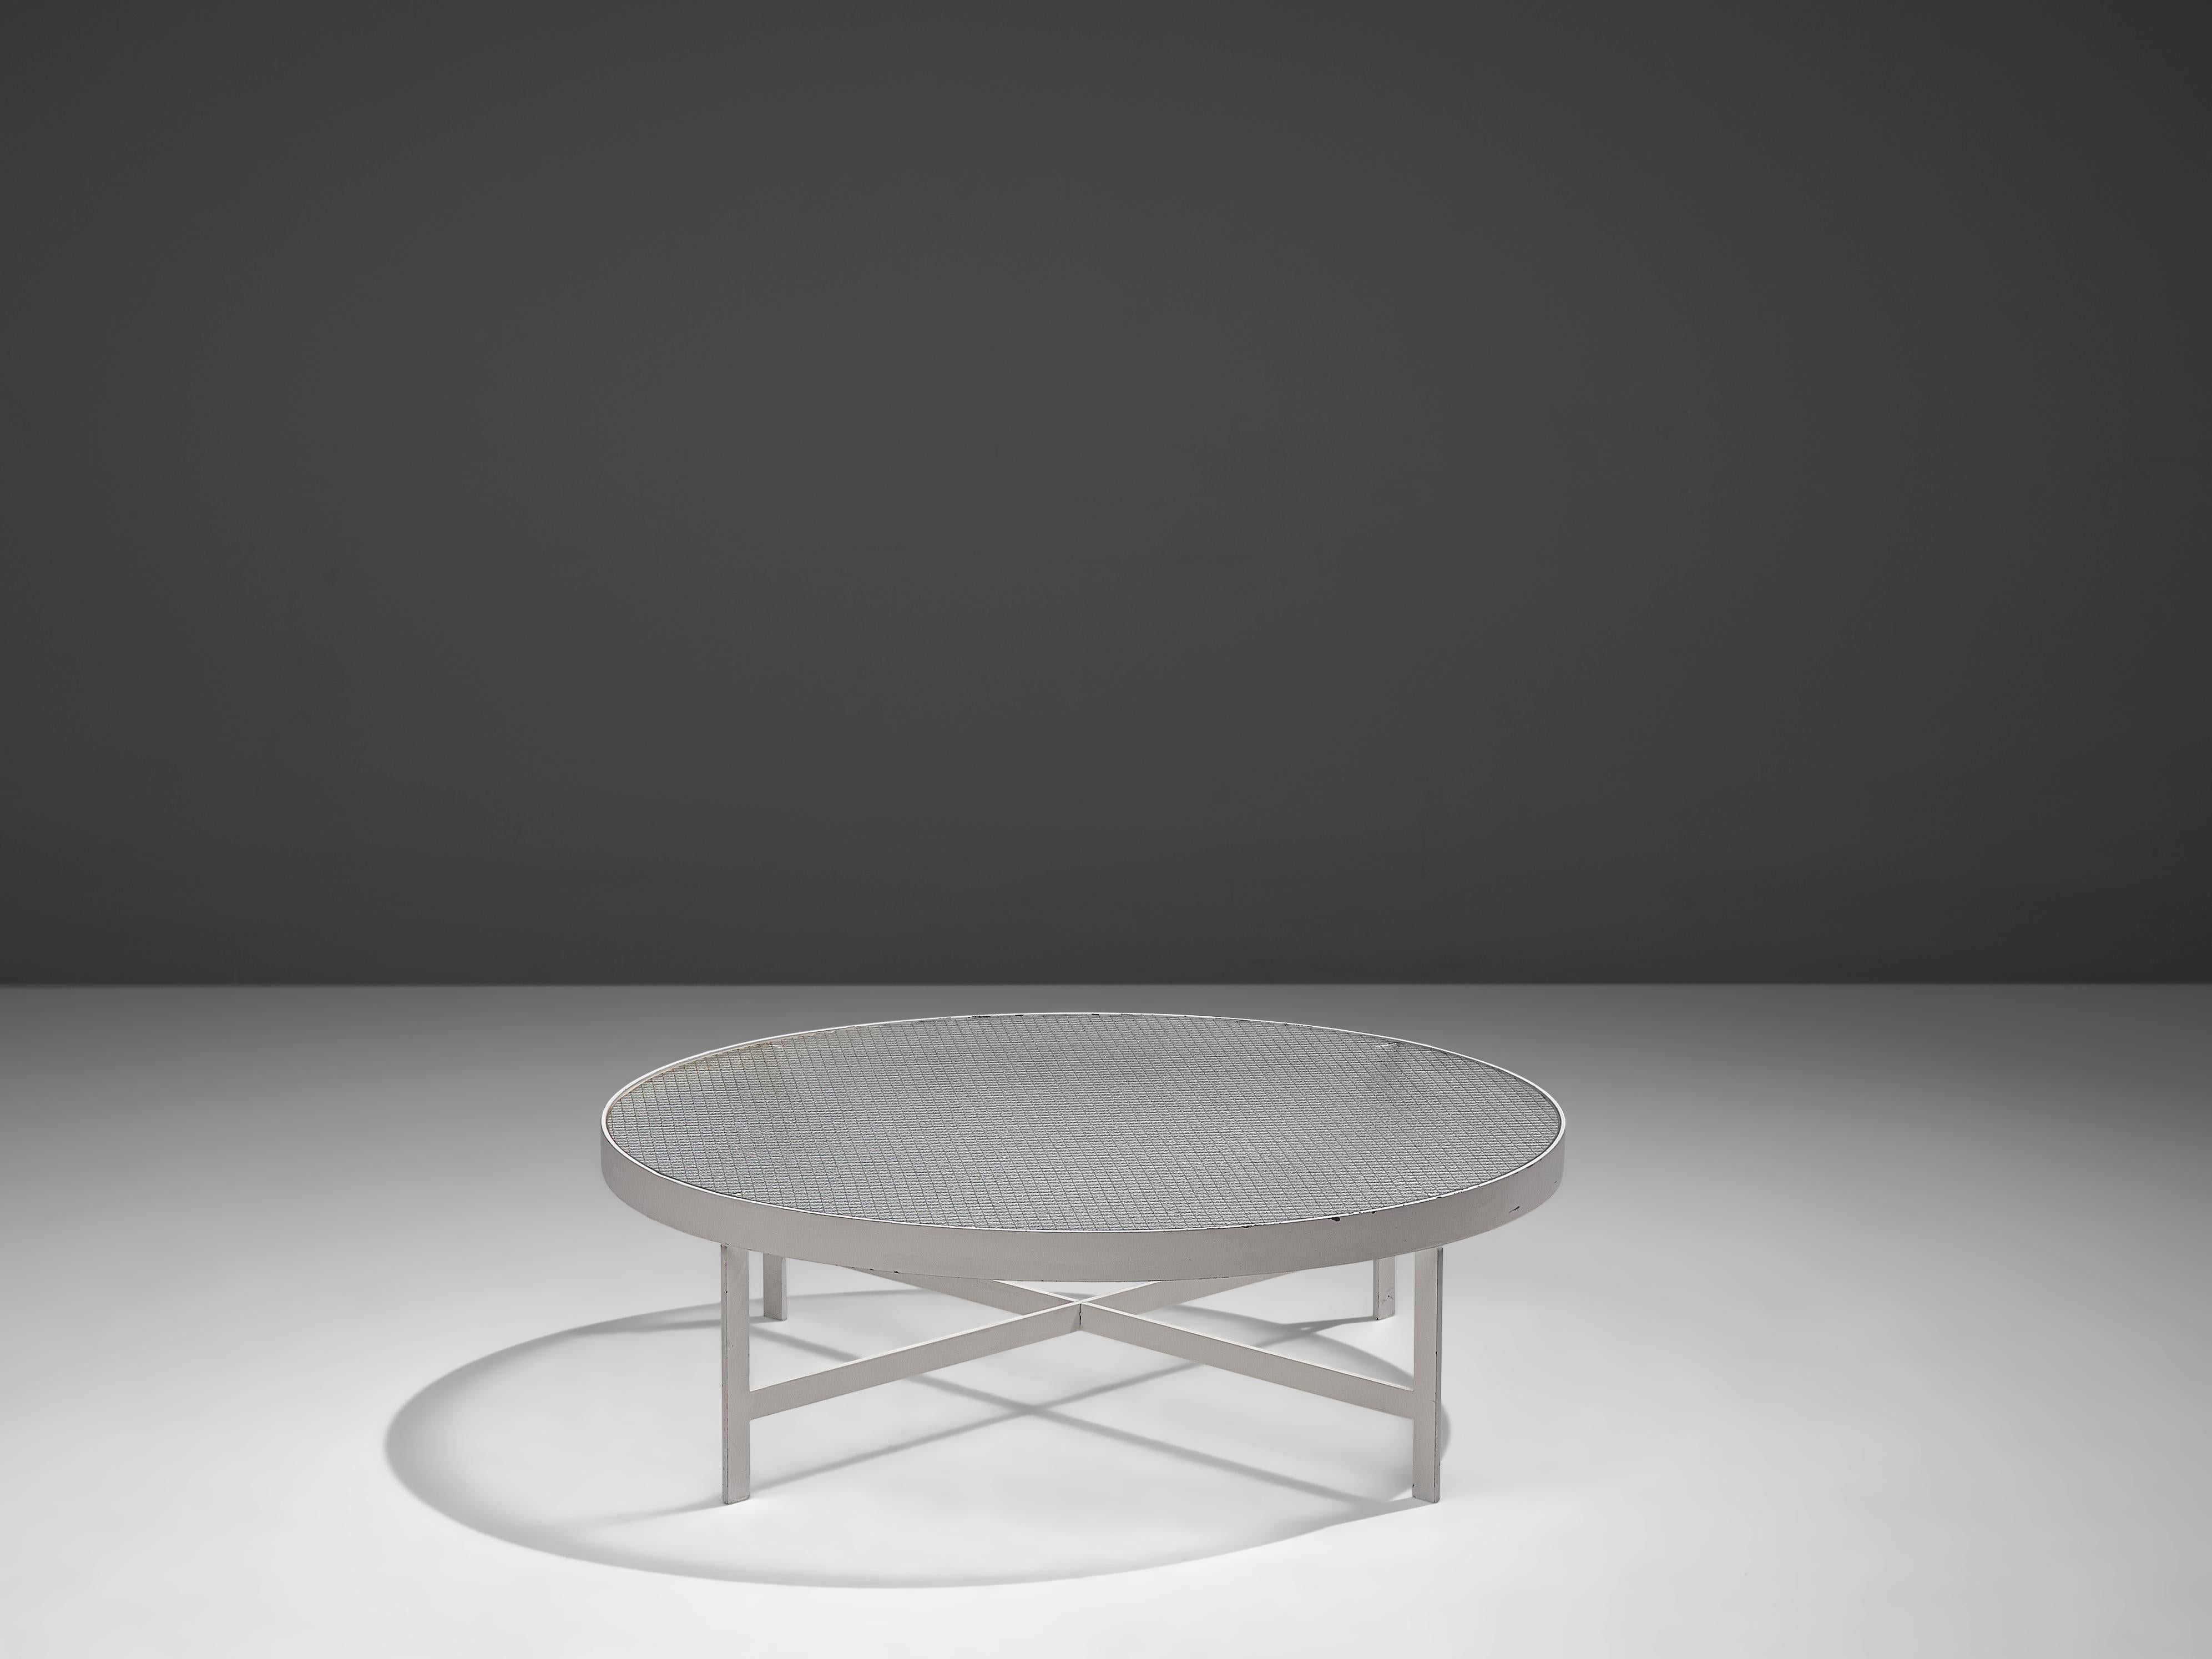 Janni Van Pelt, Couchtisch, Glas, Weißmetall, Niederlande, um 1958

Runder Couchtisch aus weiß beschichtetem Metall und Drahtglas. Dieser Tisch ist eine Variante des Modells M419 von Janni Van Pelt. Der Sockel besteht aus vier flachen Beinen mit